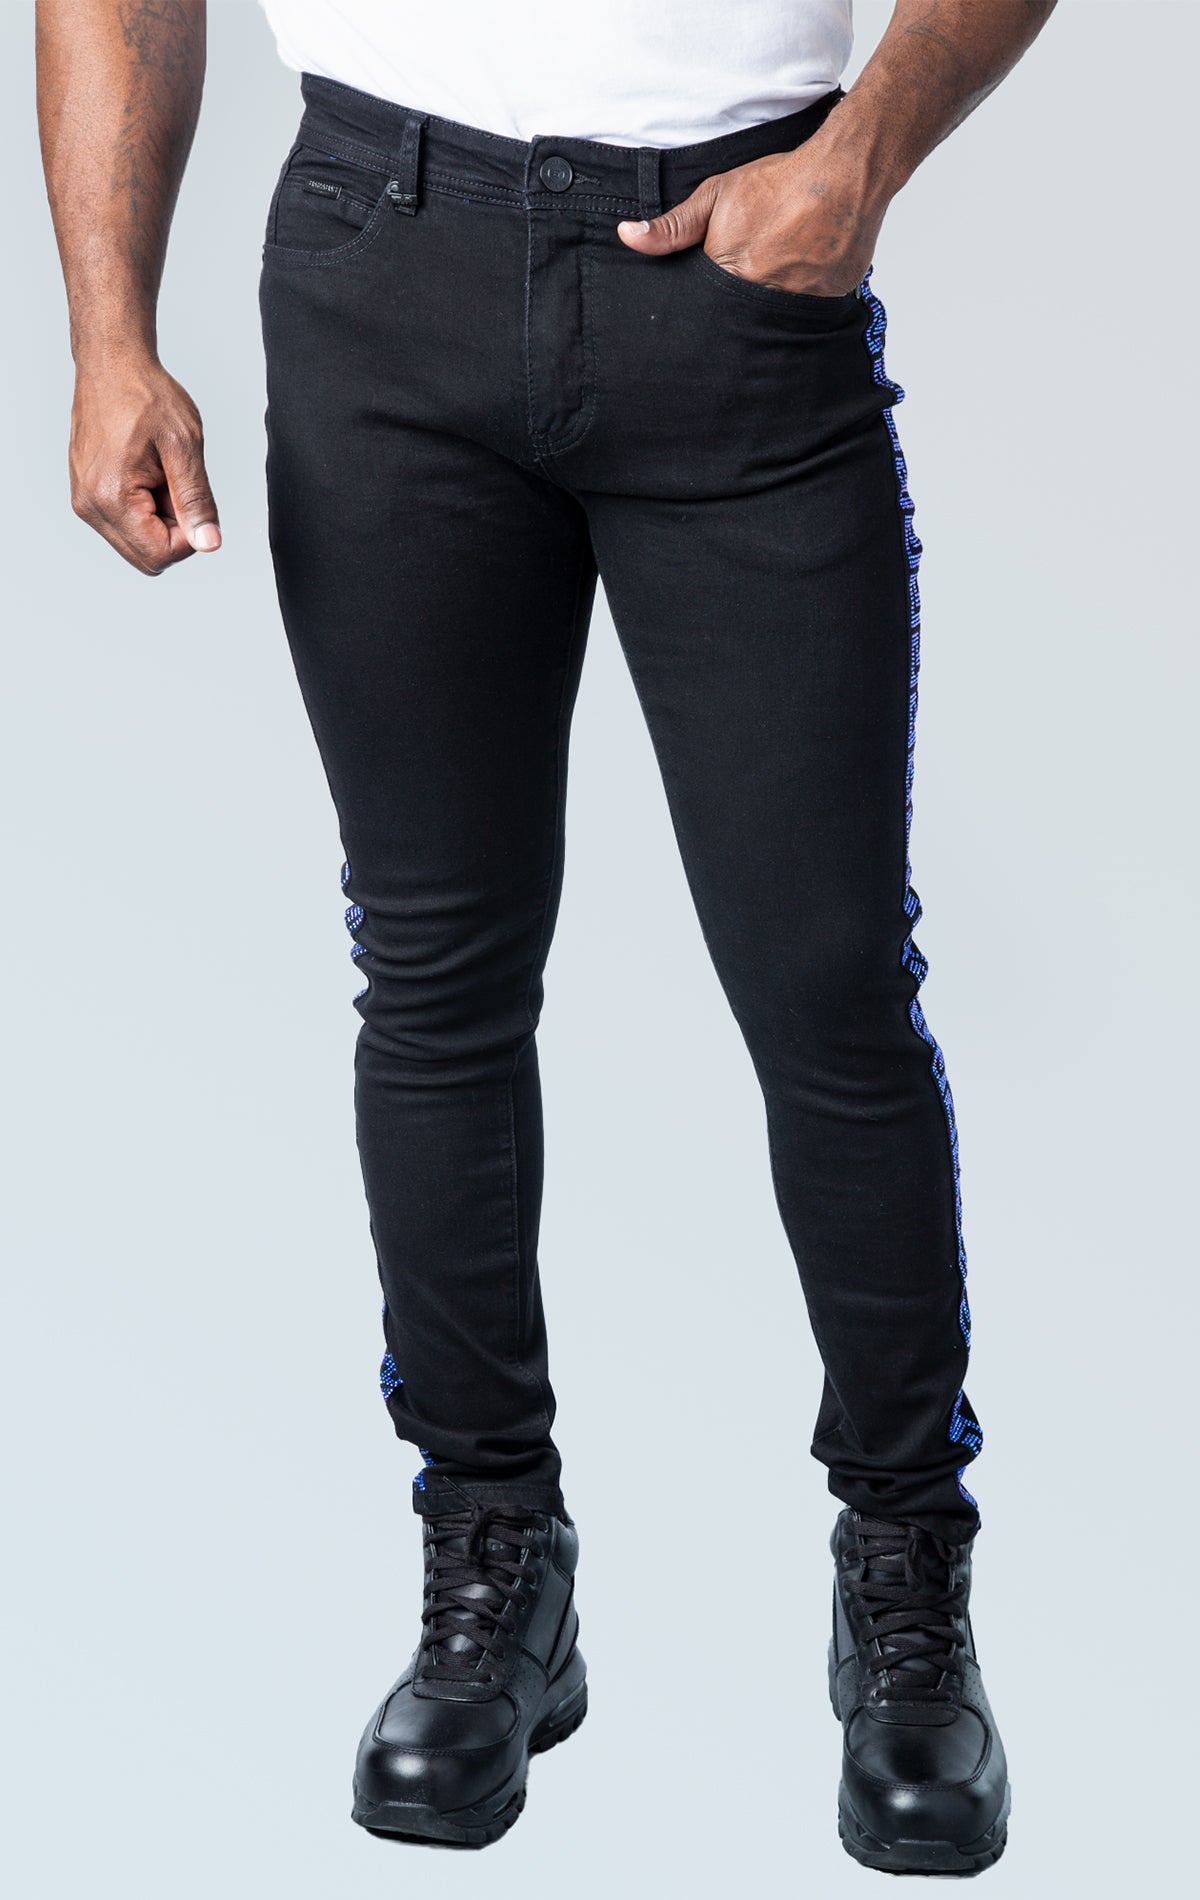 Black premium denim pants with unique blue sparkles side strip design.